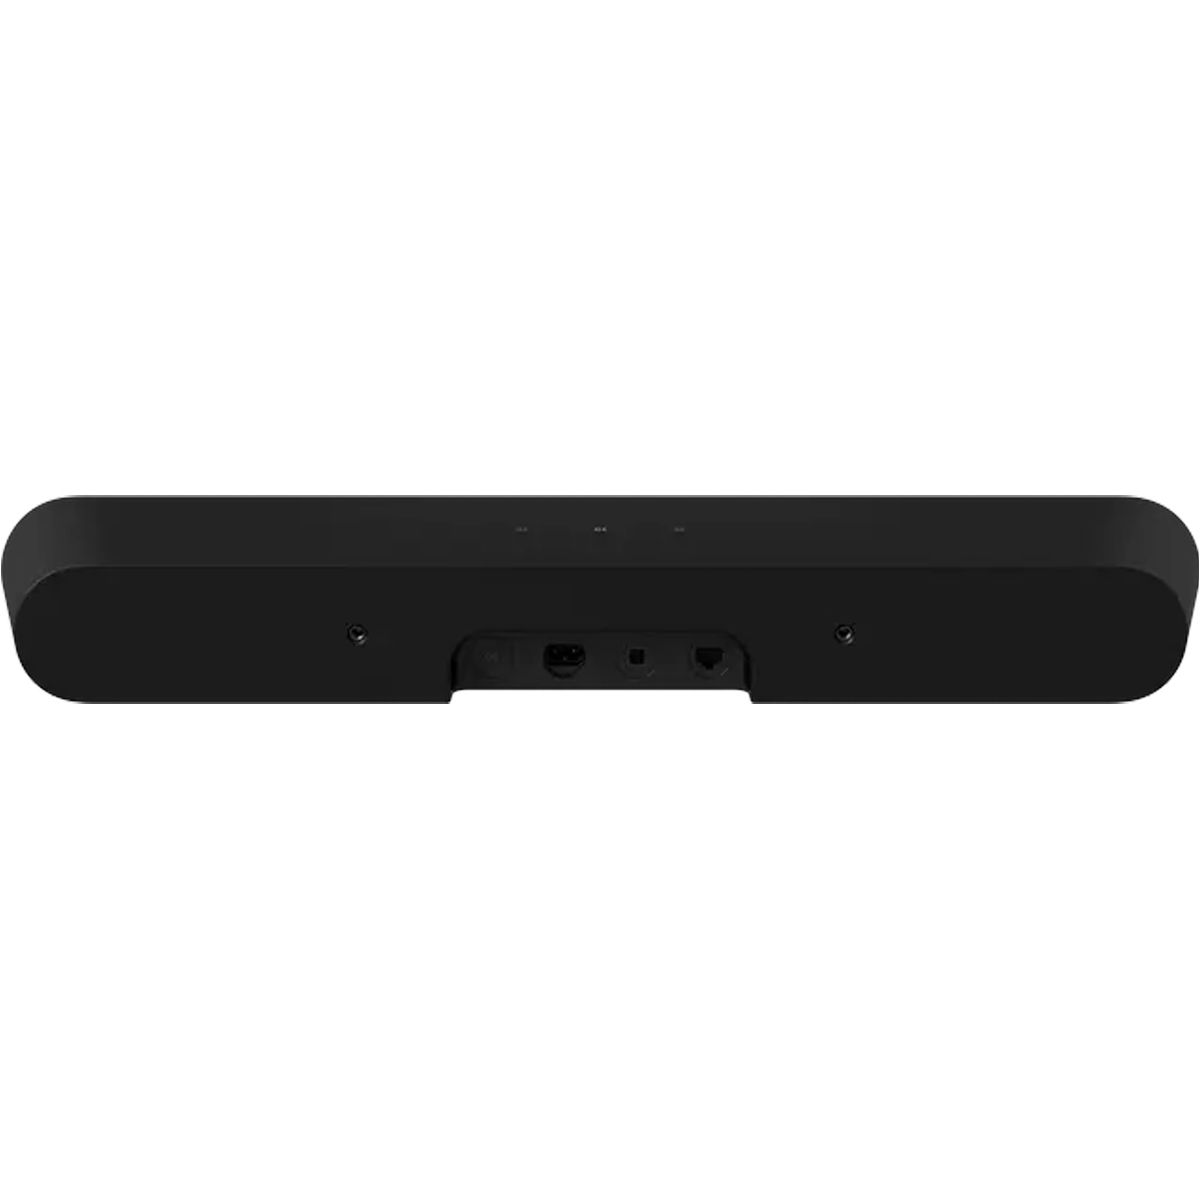 Sonos Ray Compact Soundbar - Black - rear view